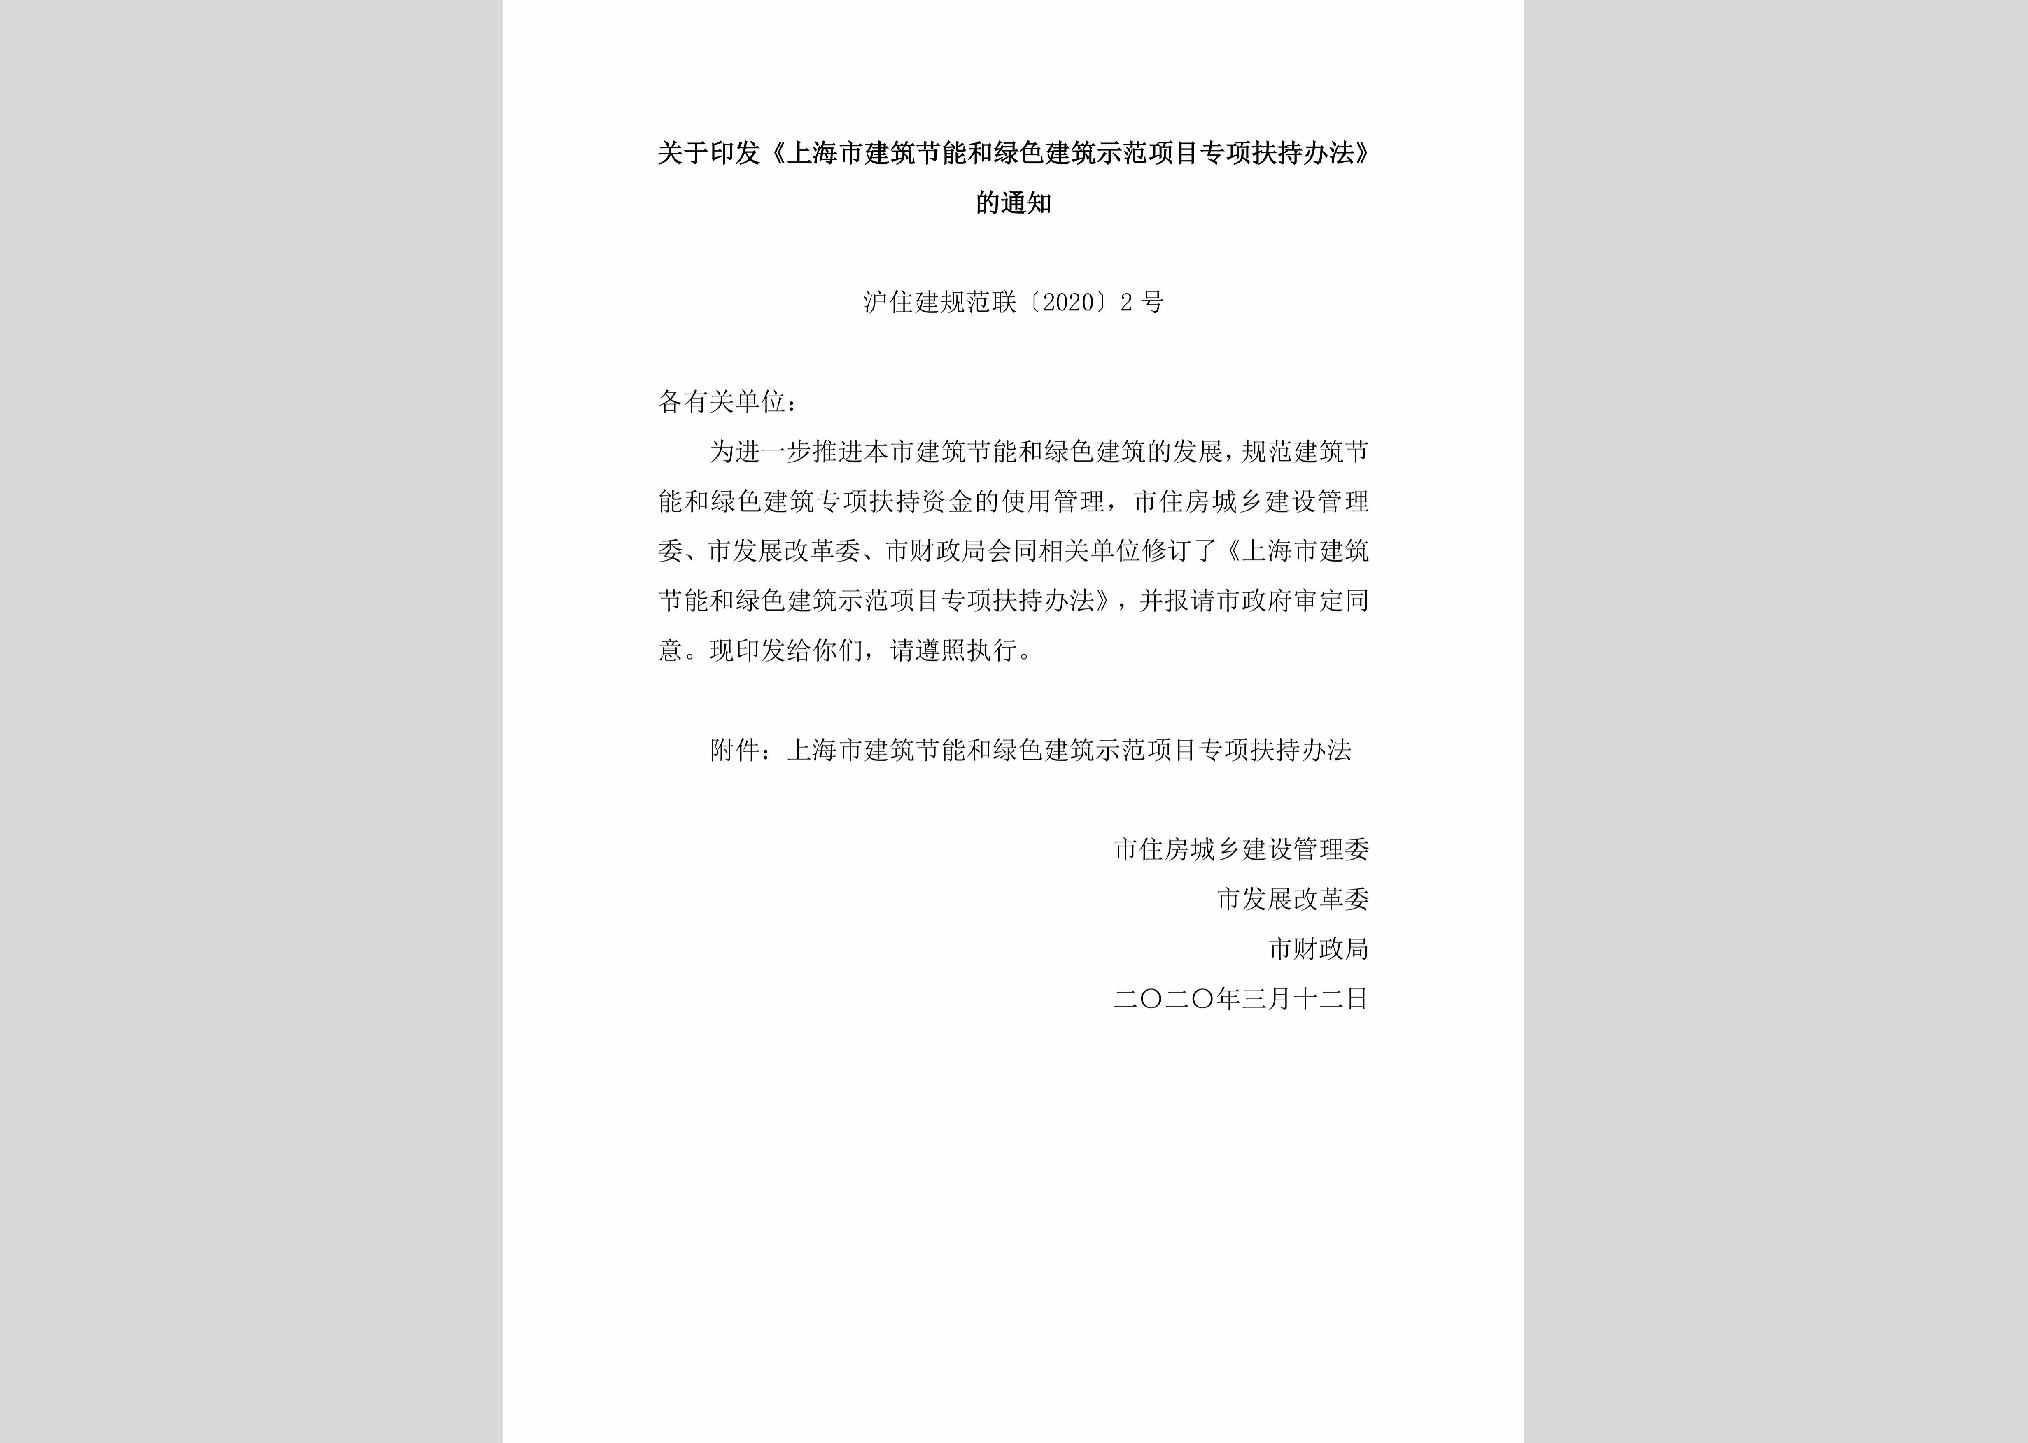 沪住建规范联[2020]2号：关于印发《上海市建筑节能和绿色建筑示范项目专项扶持办法》的通知